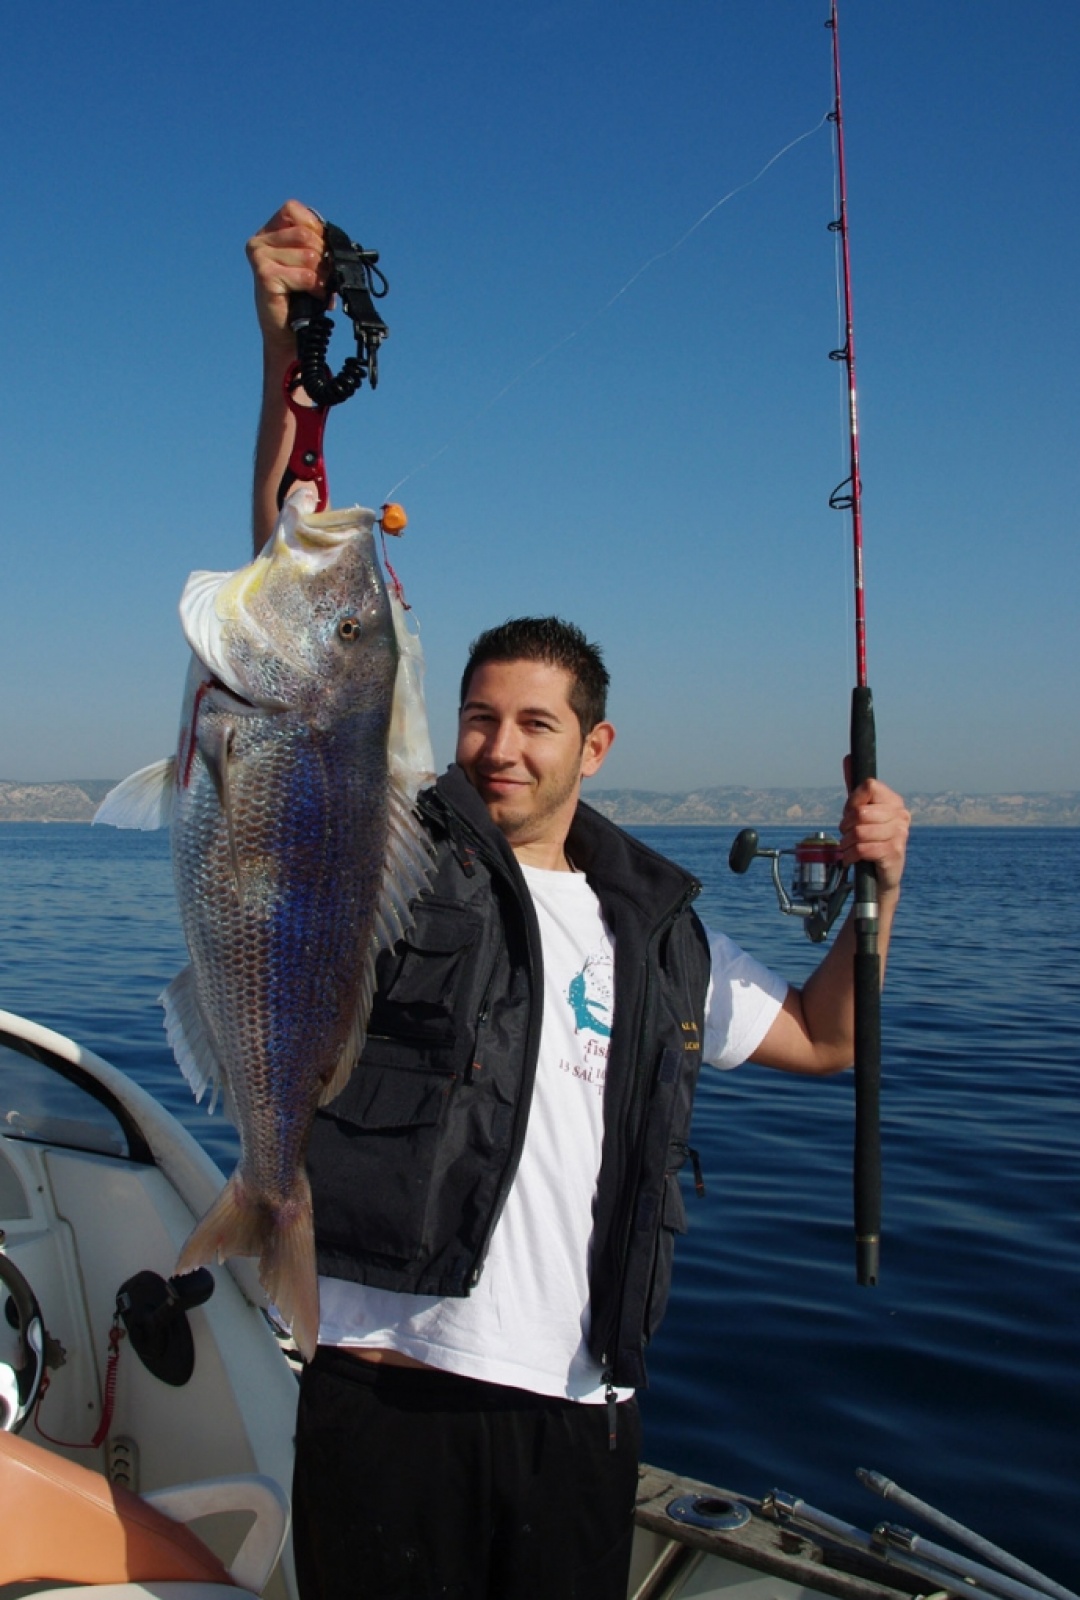 Découvrir les Cannes Big Game pour Pêche